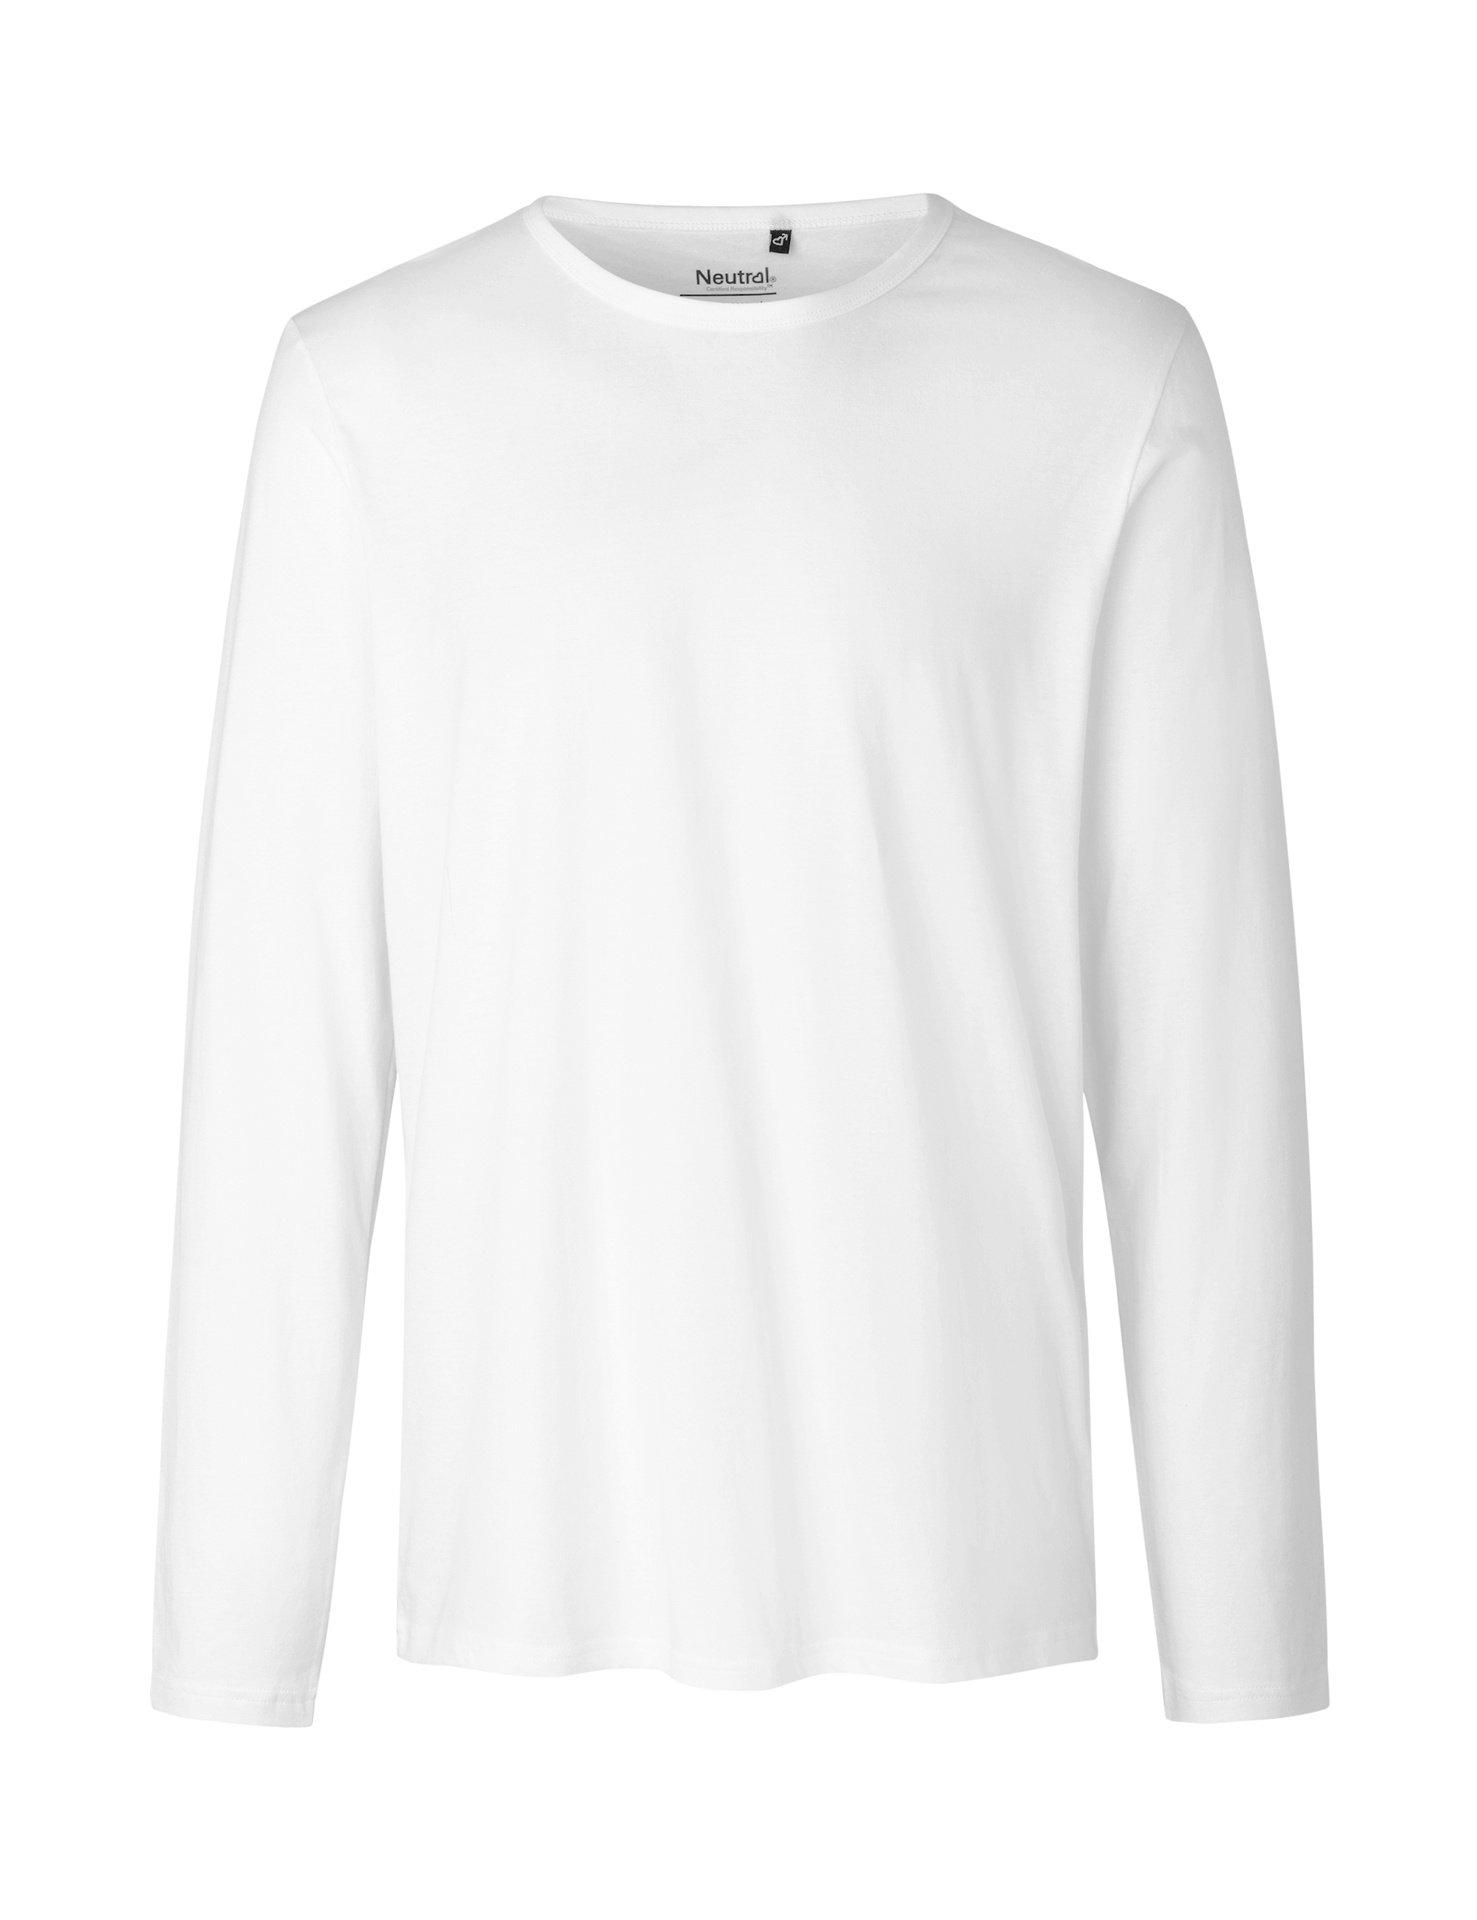 [PR/02338] Mens Long Sleeve T-Shirt (White 01, S)